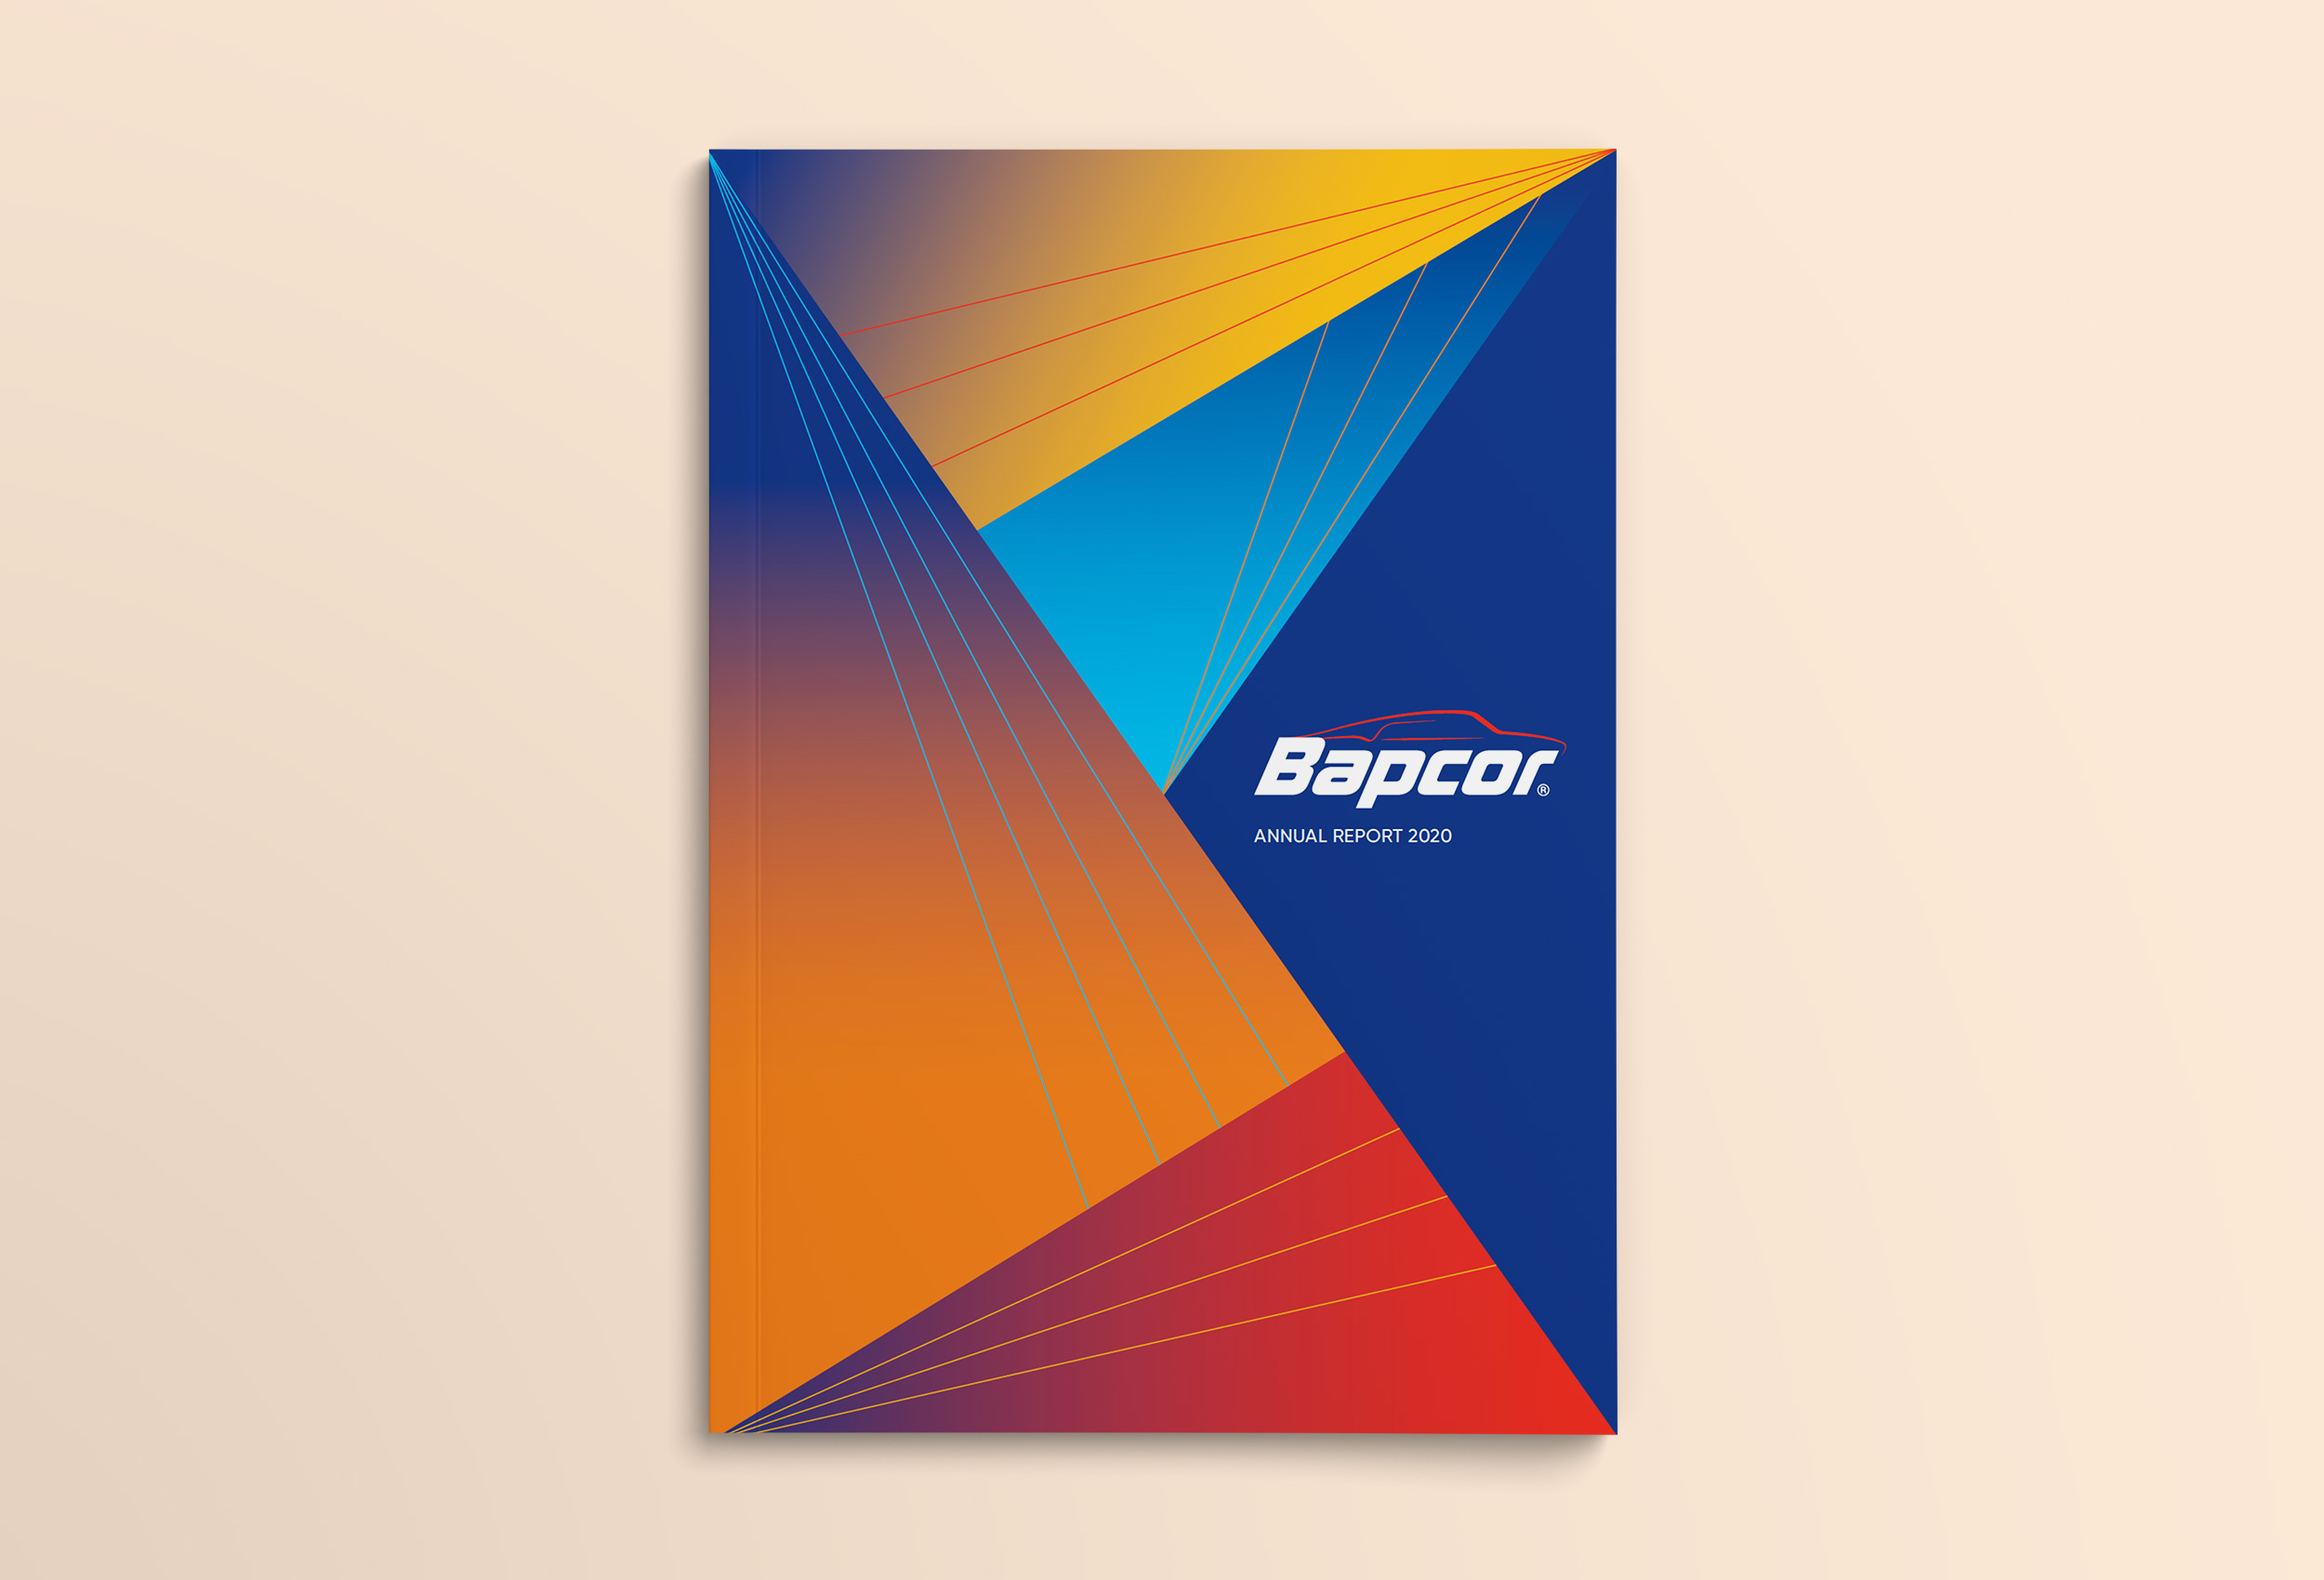 Bapcor Annual Report Cover design 2020